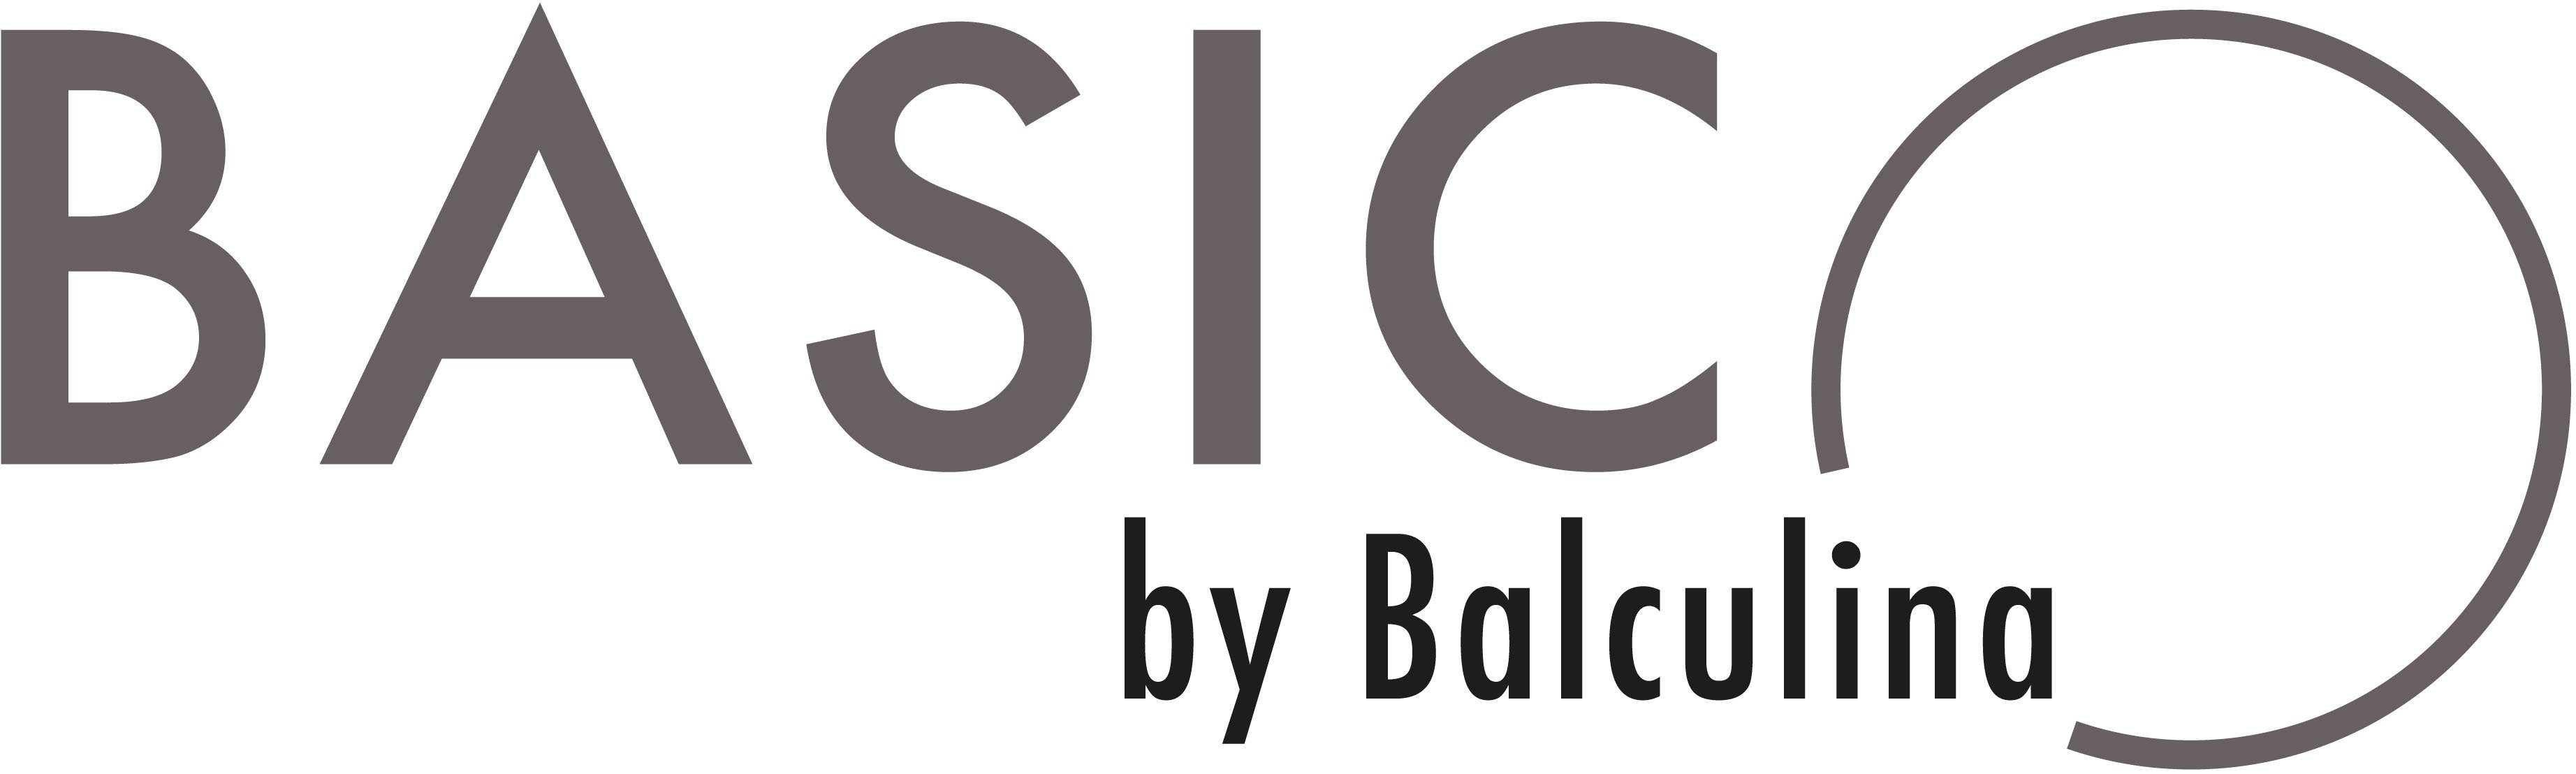 BASIC by Balculina